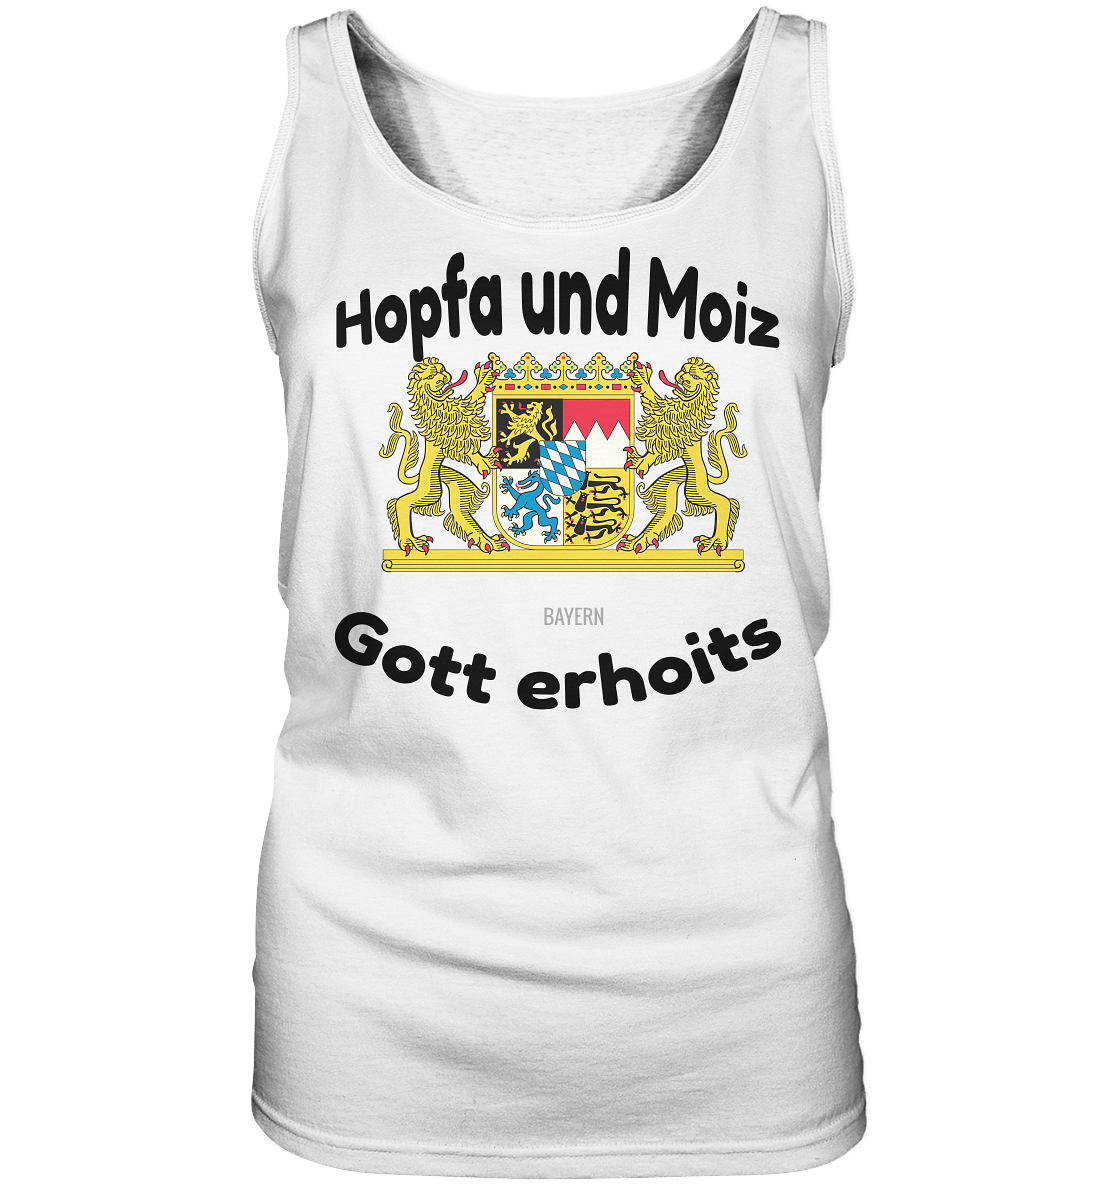 Hopfa und Moiz Gott erhoits  - Ladies Tank-Top